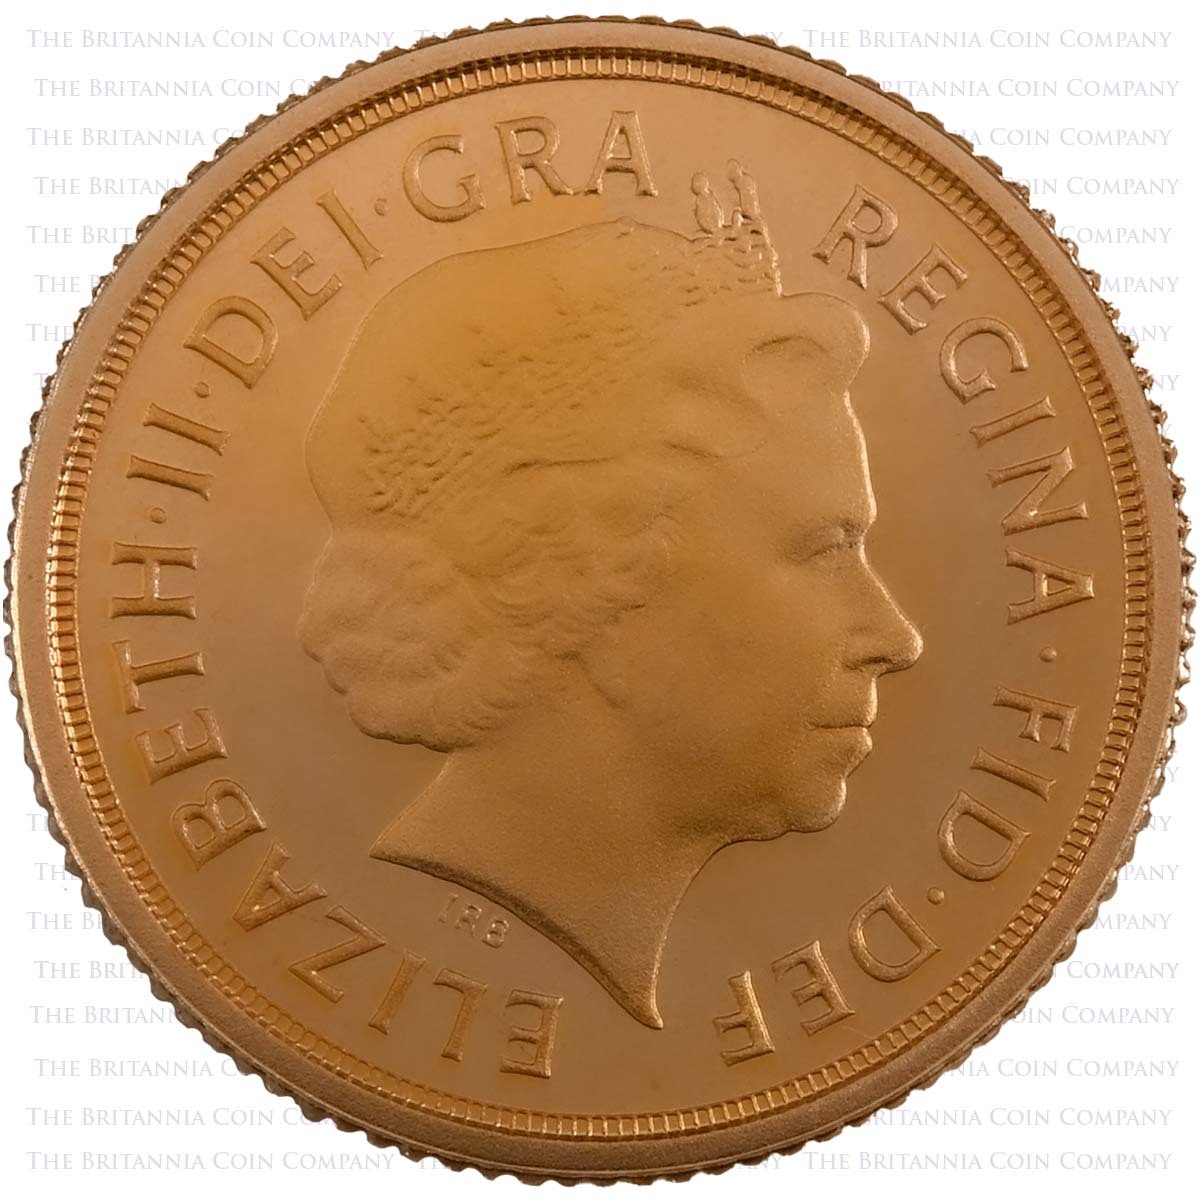 2013 Elizabeth II Gold Proof Quarter Sovereign Obverse